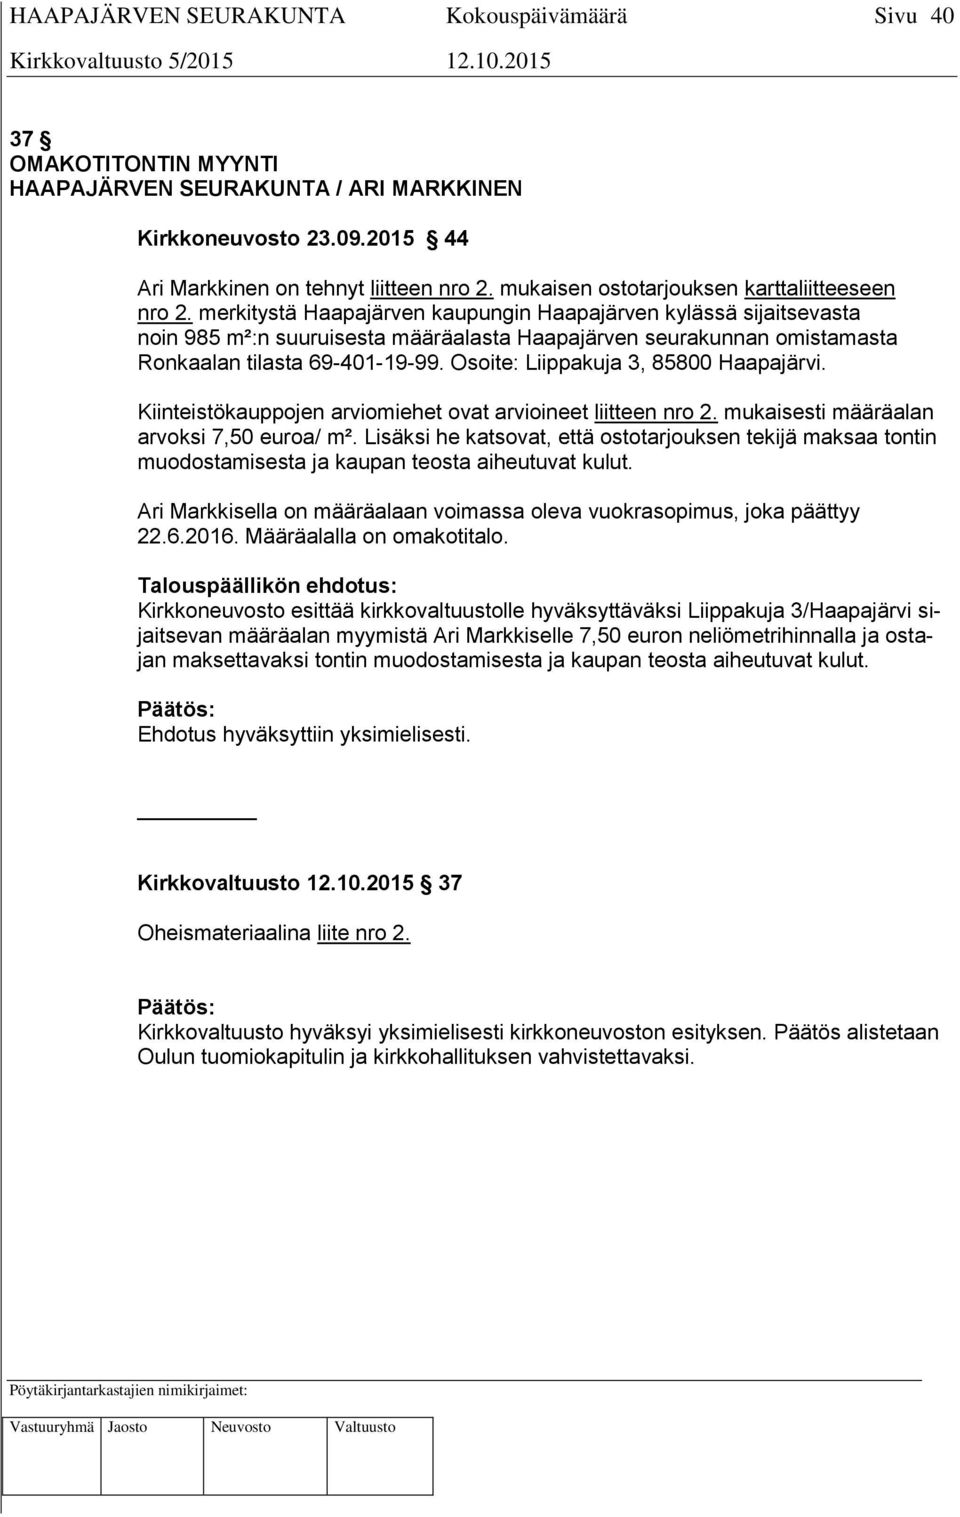 Osoite: Liippakuja 3, 85800 Haapajärvi. Kiinteistökauppojen arviomiehet ovat arvioineet liitteen nro 2. mukaisesti määräalan arvoksi 7,50 euroa/ m².